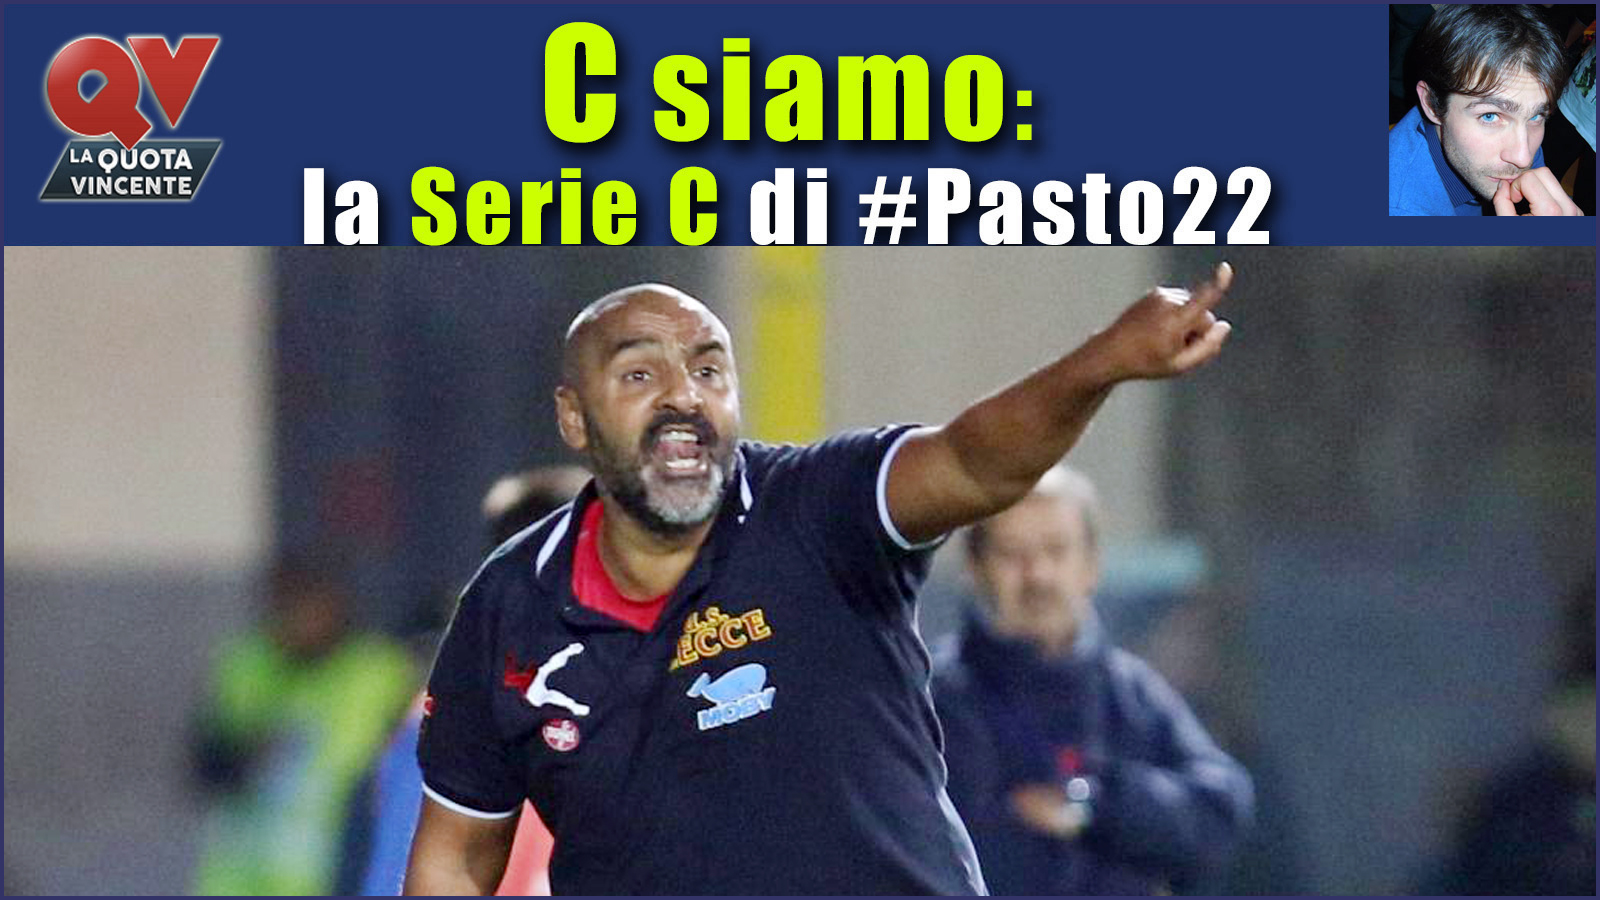 Pronostici Serie C domenica 28 gennaio: #Csiamo, il blog di #Pasto22